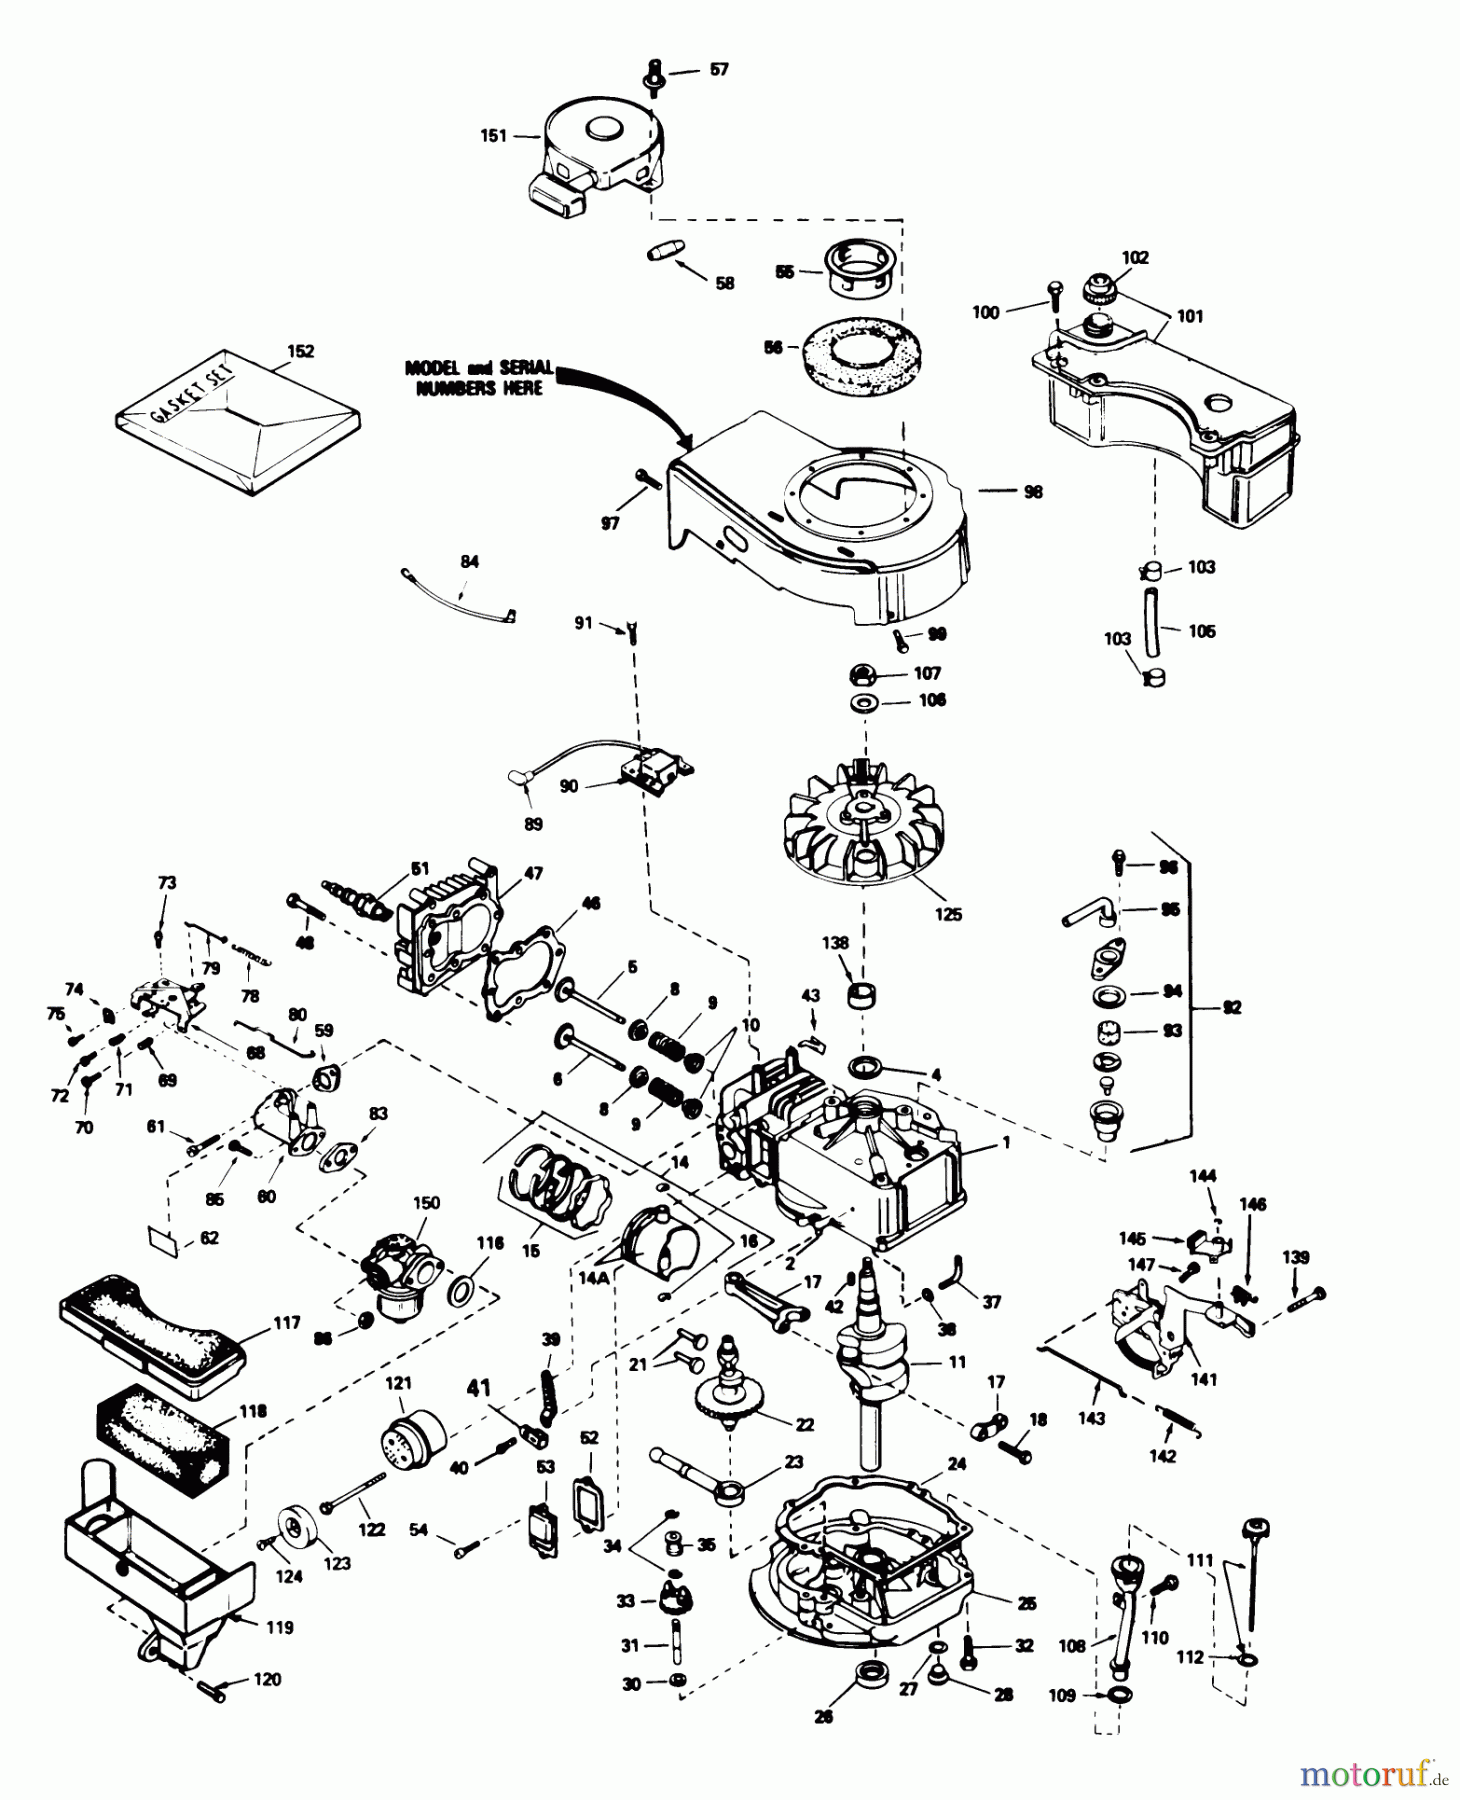  Toro Neu Mowers, Walk-Behind Seite 1 16575 - Toro Lawnmower, 1985 (5000001-5999999) ENGINE TECUMSEH MODEL NO. TVS90-43228D